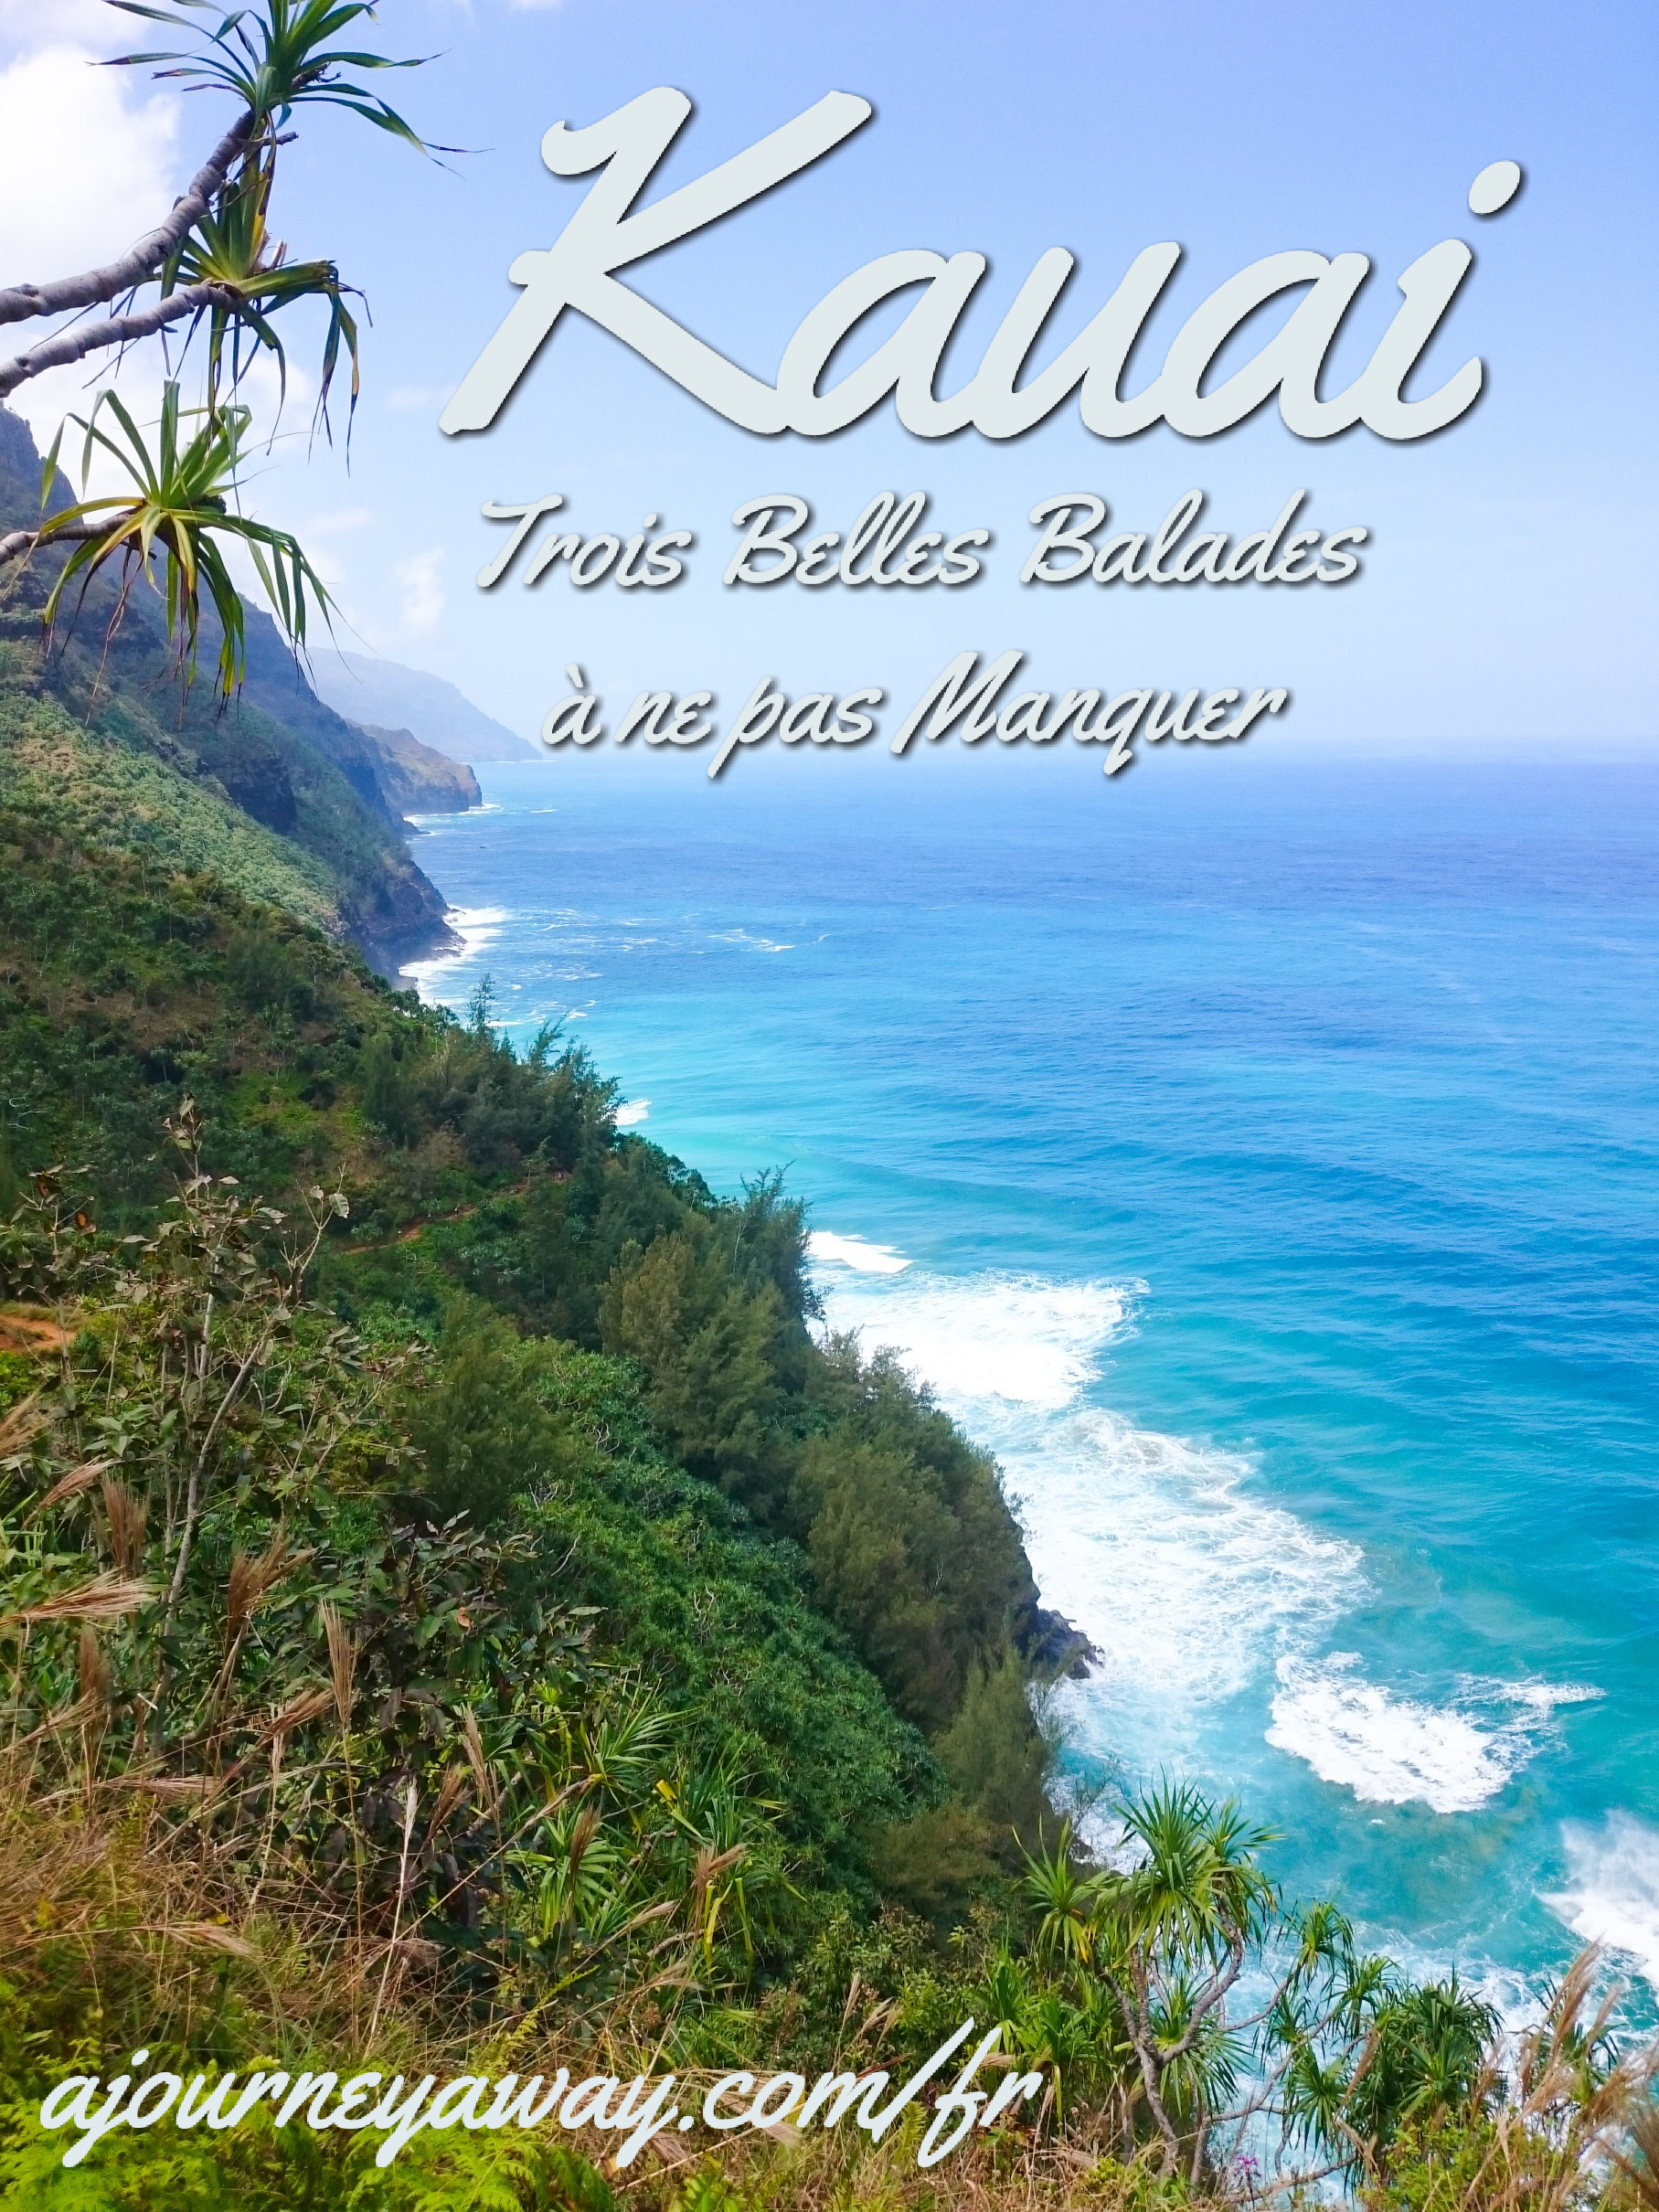 Trois belles randonnées à ne pas manquer à Kauai, Hawaï